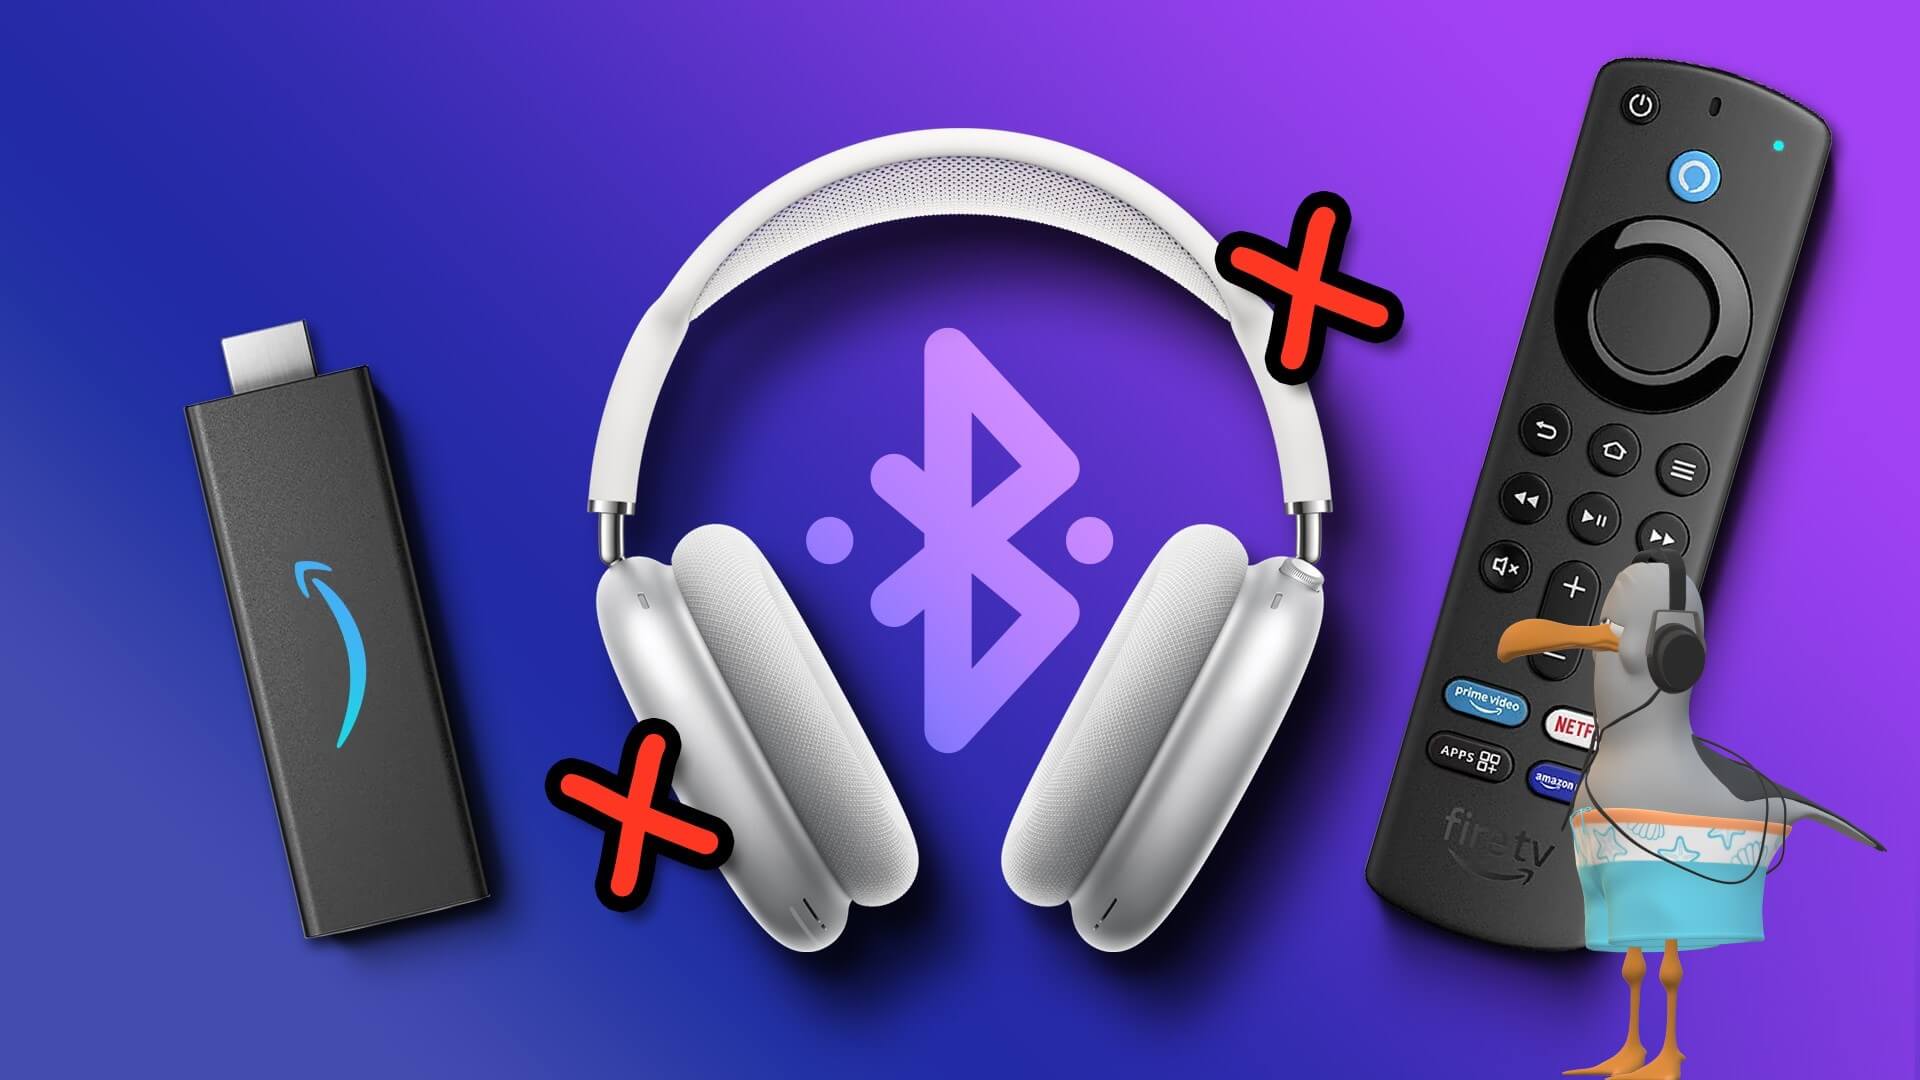 أفضل 6 طرق لإصلاح سماعات Bluetooth غير المتصلة بـ Fire TV Stick 4K - %categories